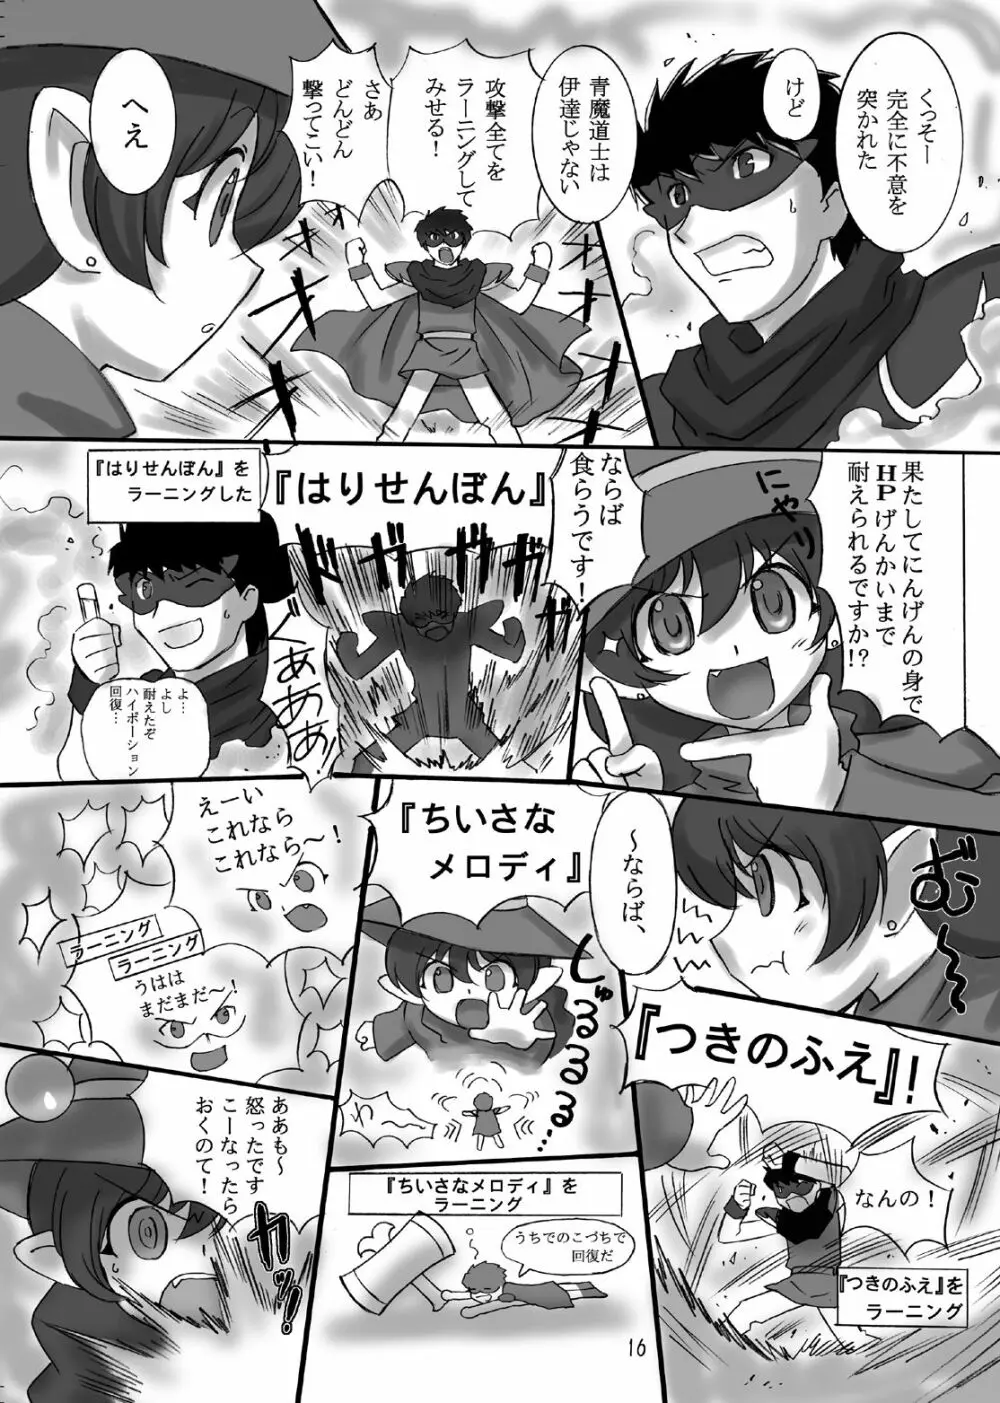 JOB☆STAR 10 16ページ